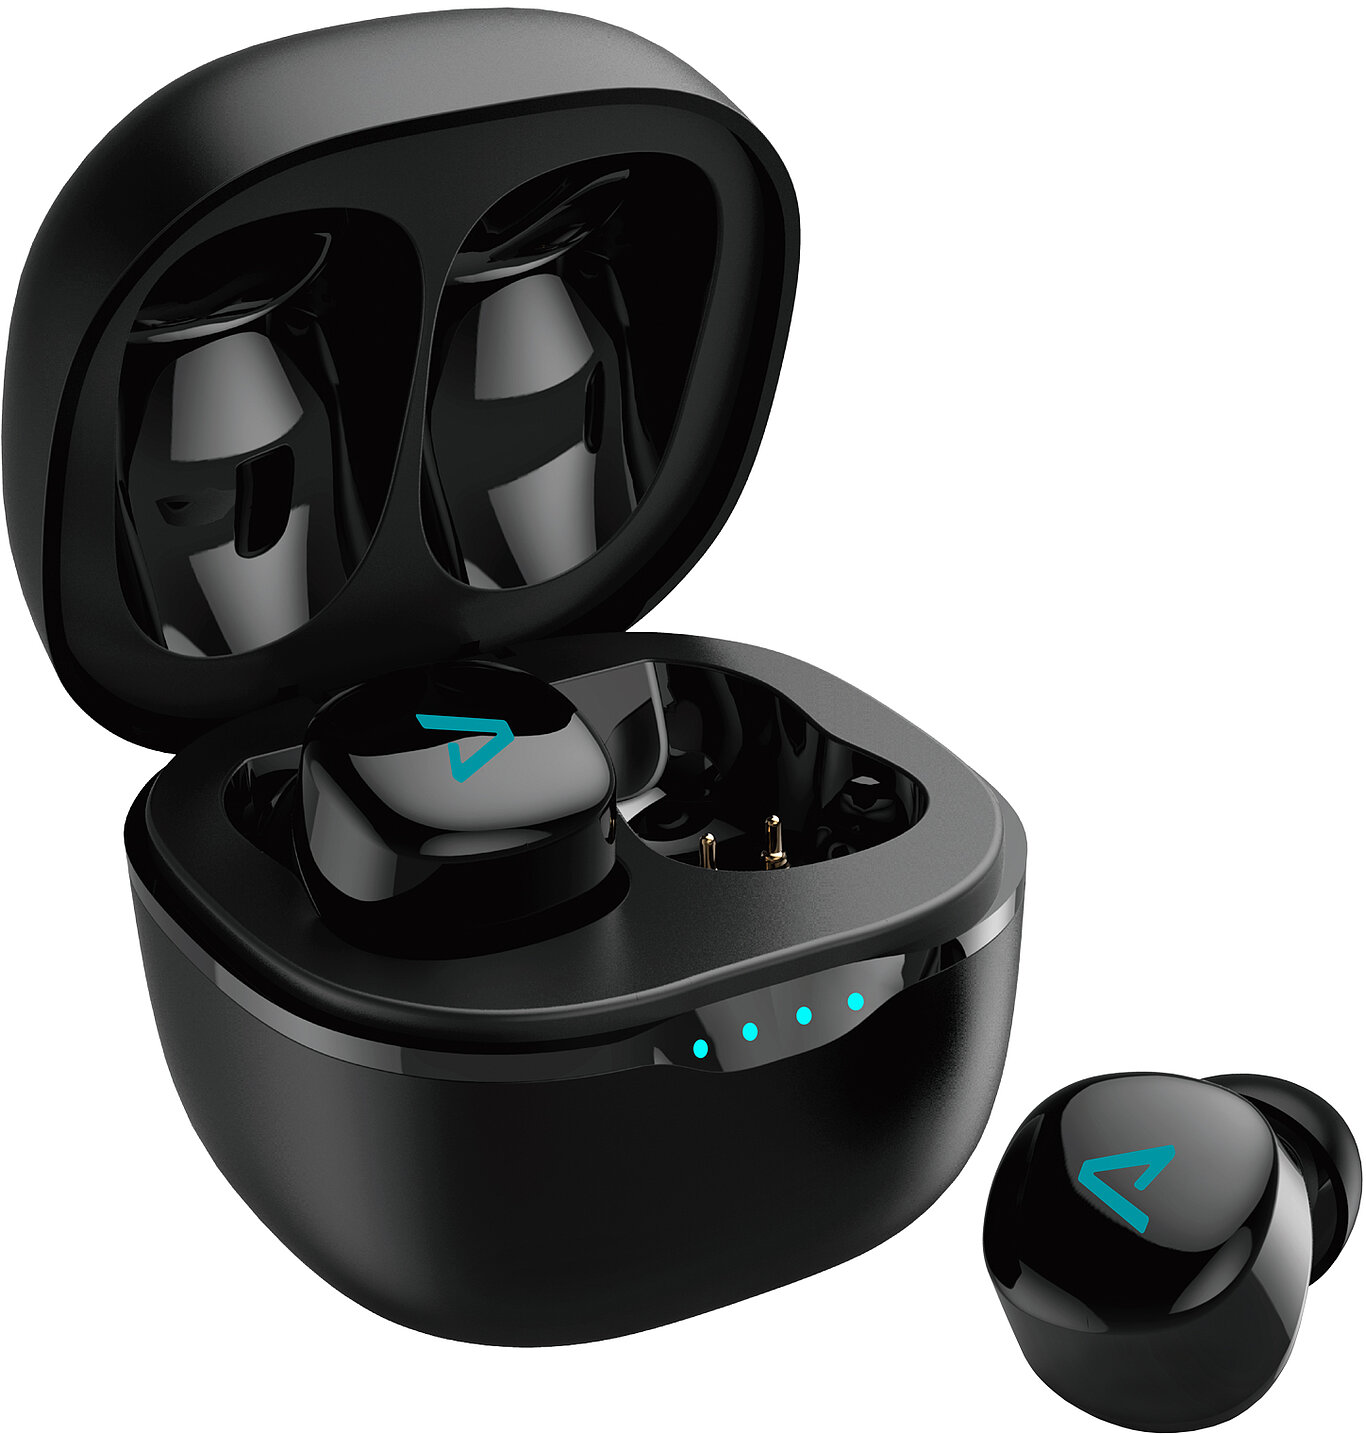 LAMAX Dots2 Touch Black - A legkisebb fejhallgató a piacon, amely mindenkinek megfelel